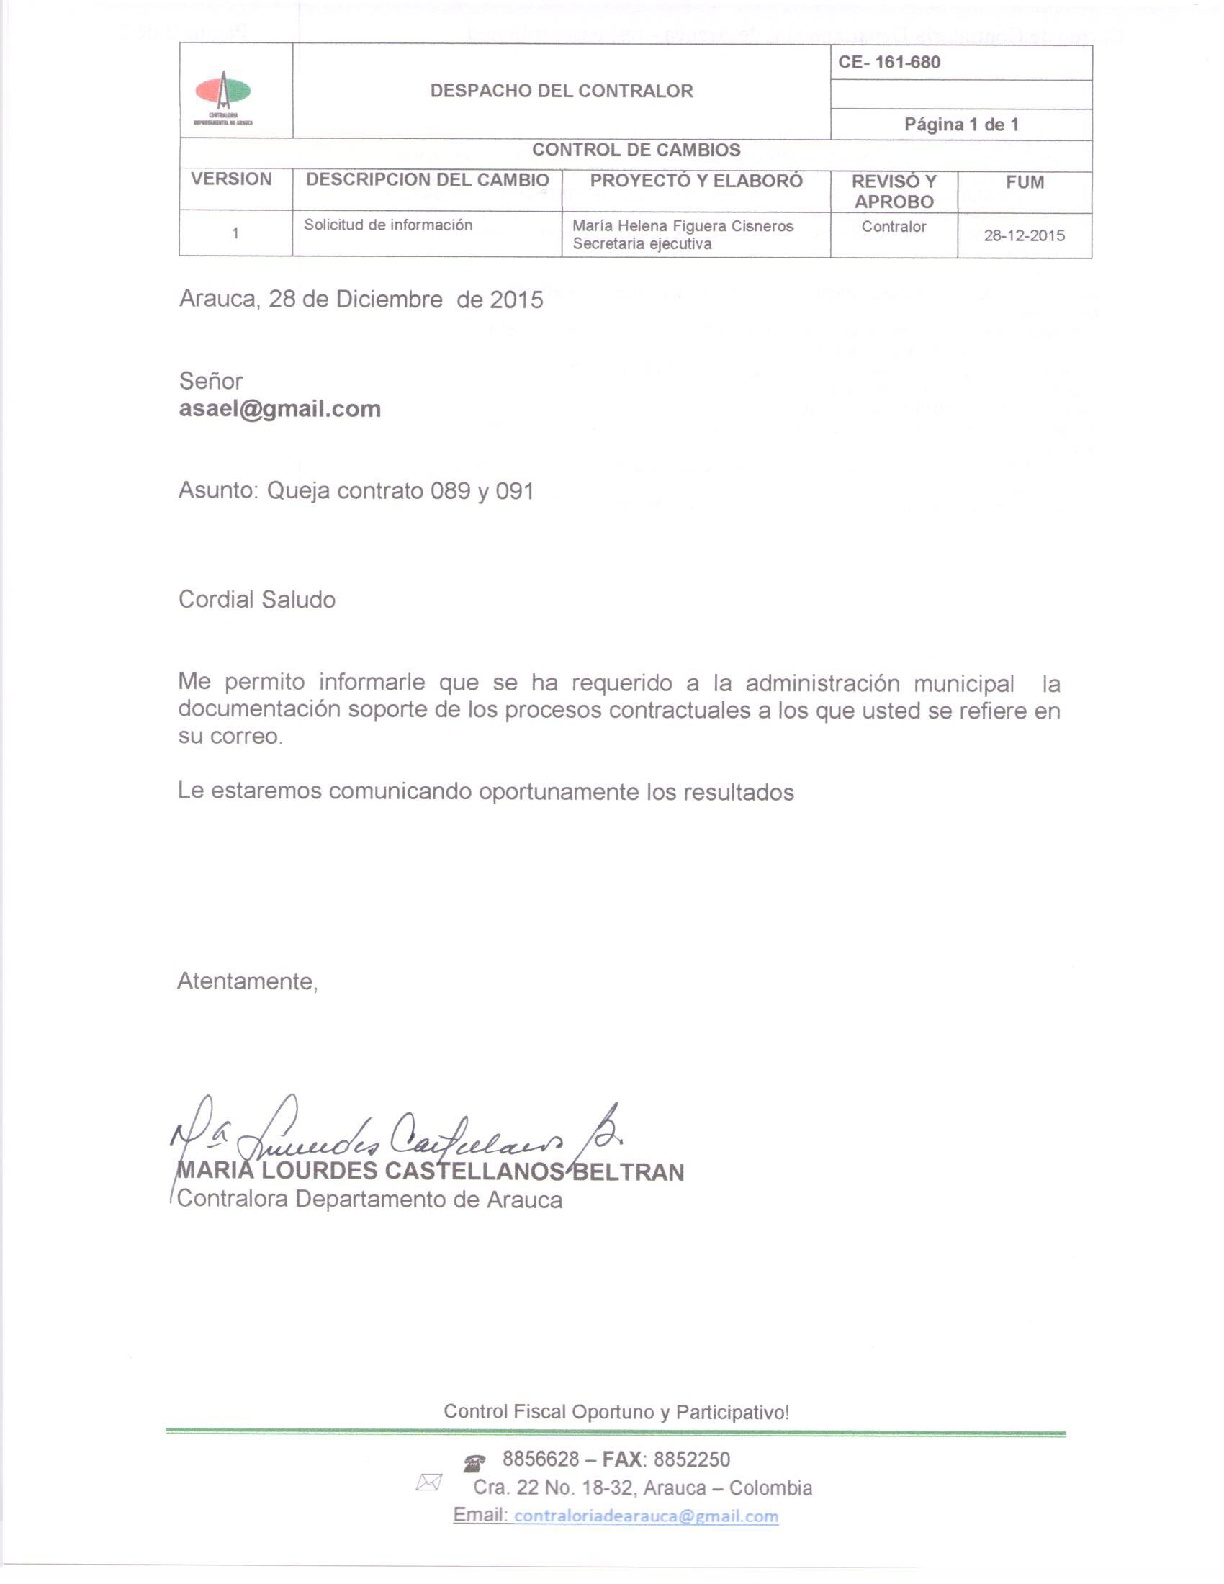 Respuesta a queja contratos 089 y 091 municipio de Saravena